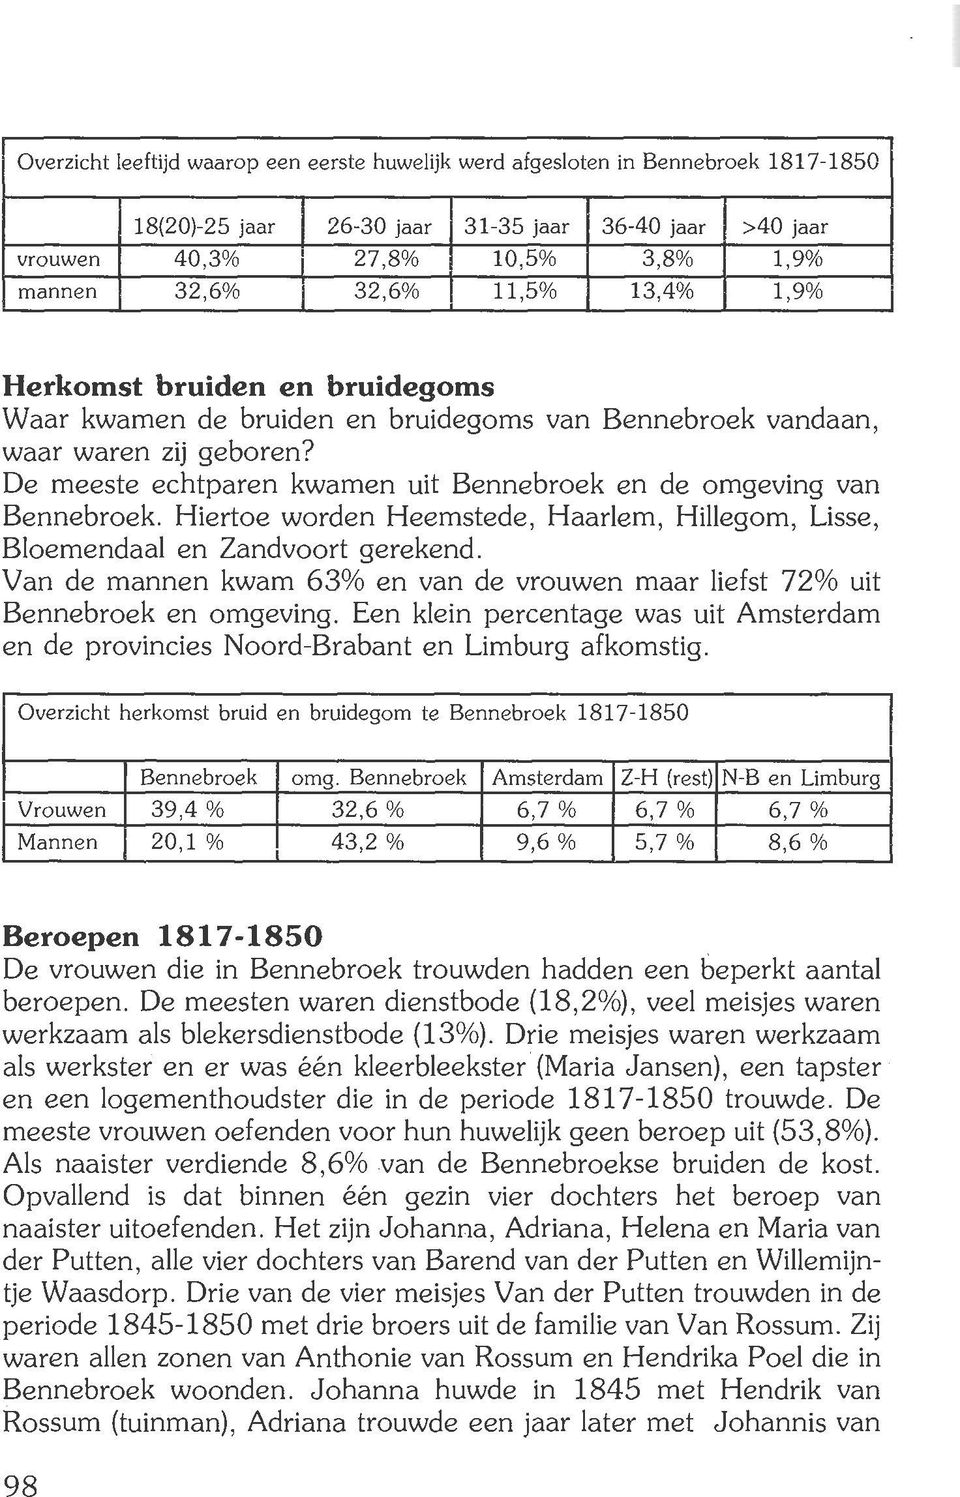 De meeste echtparen kwamen uit Bennebroek en de omgeving van Bennebroek. Hiertoe worden Heemstede, Haarlem, Hillegom, Lisse, Bloemendaal en Zandvoort gerekend.